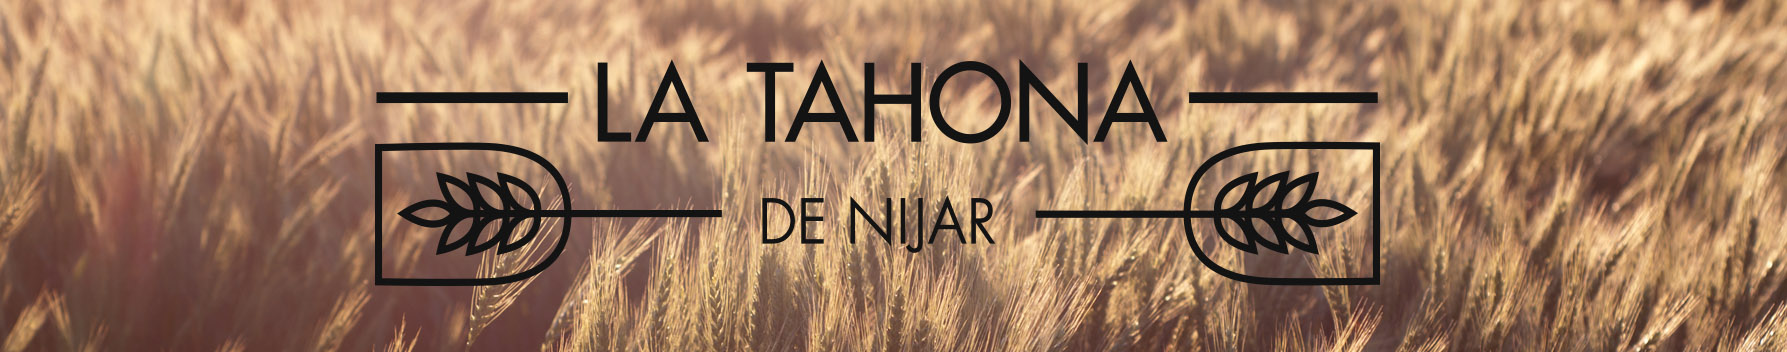 La Tahona de Nijar